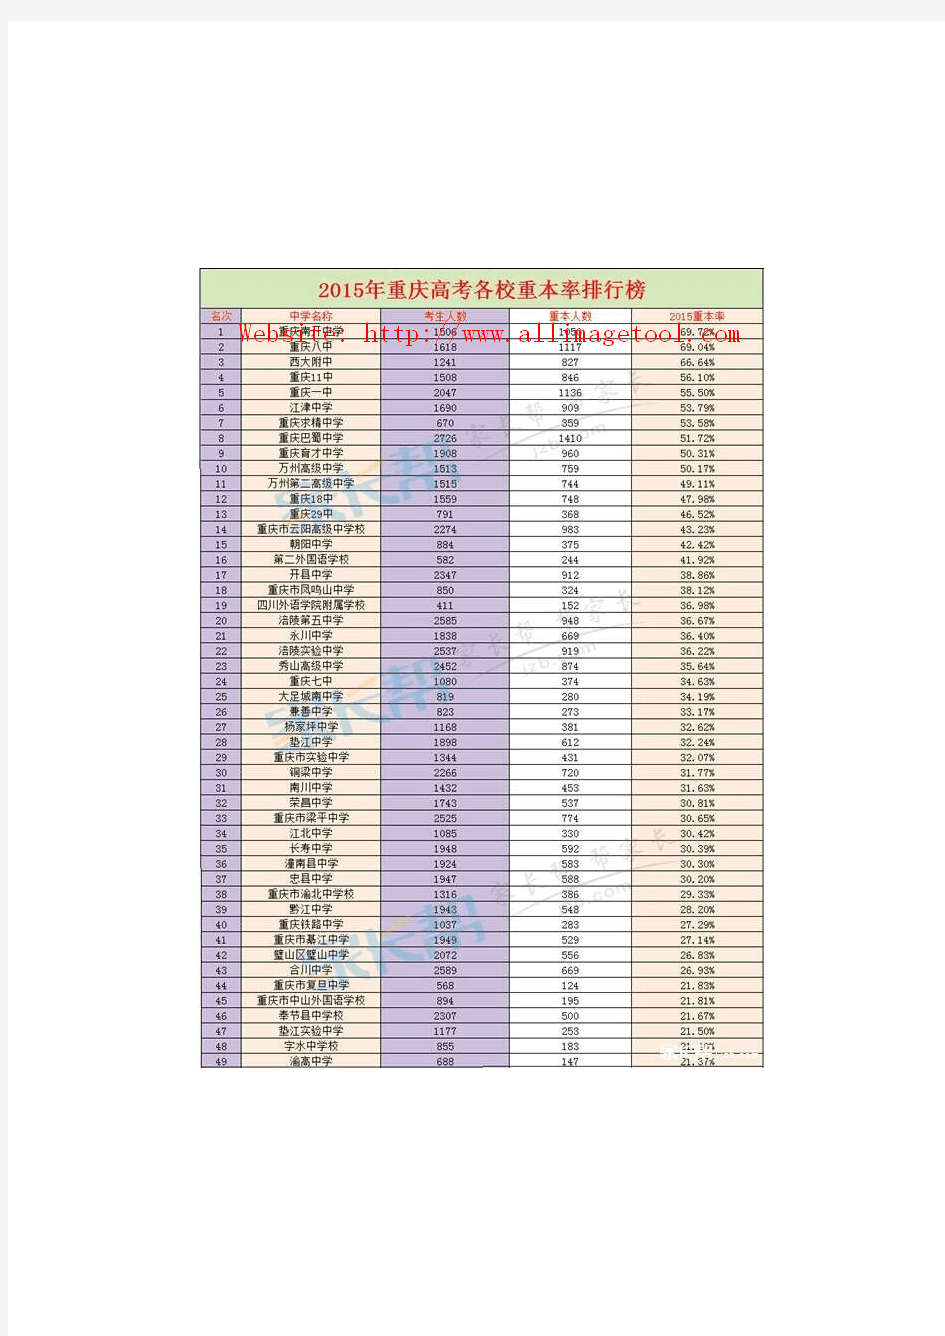 2015年重庆主要重点中学高考重本上线率排名表